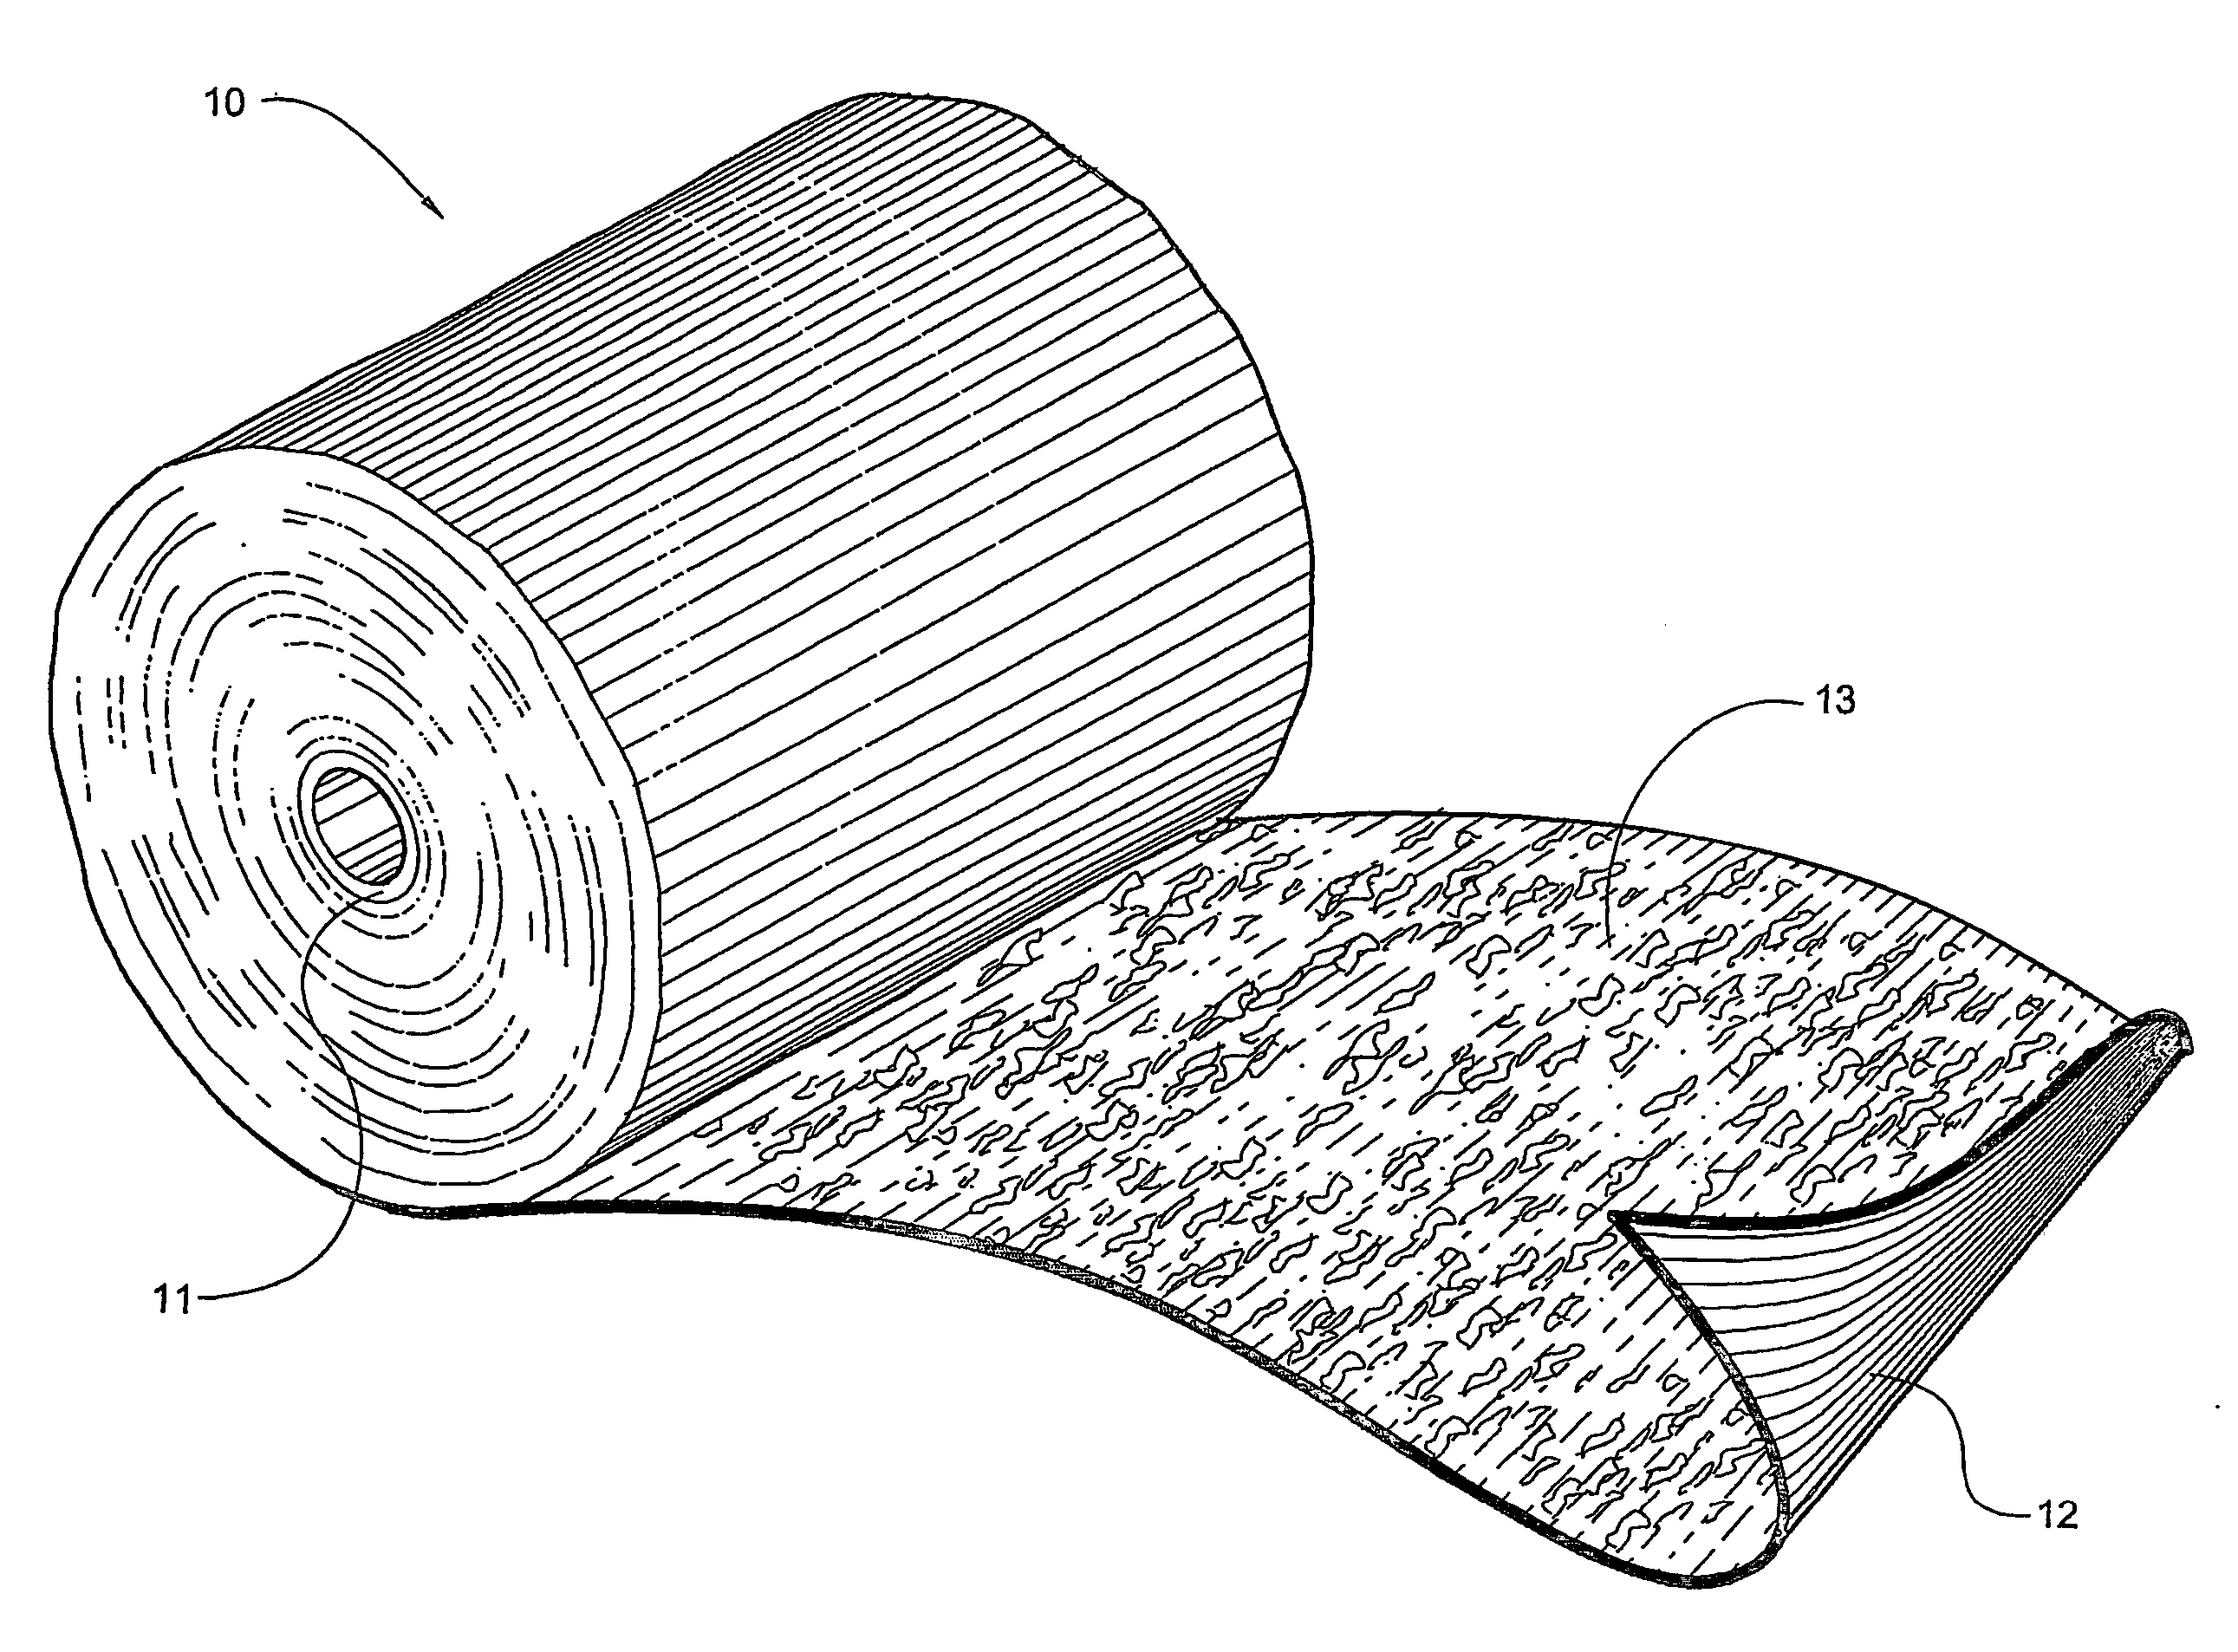 Weft-inserted elastic adhesive bandage and method